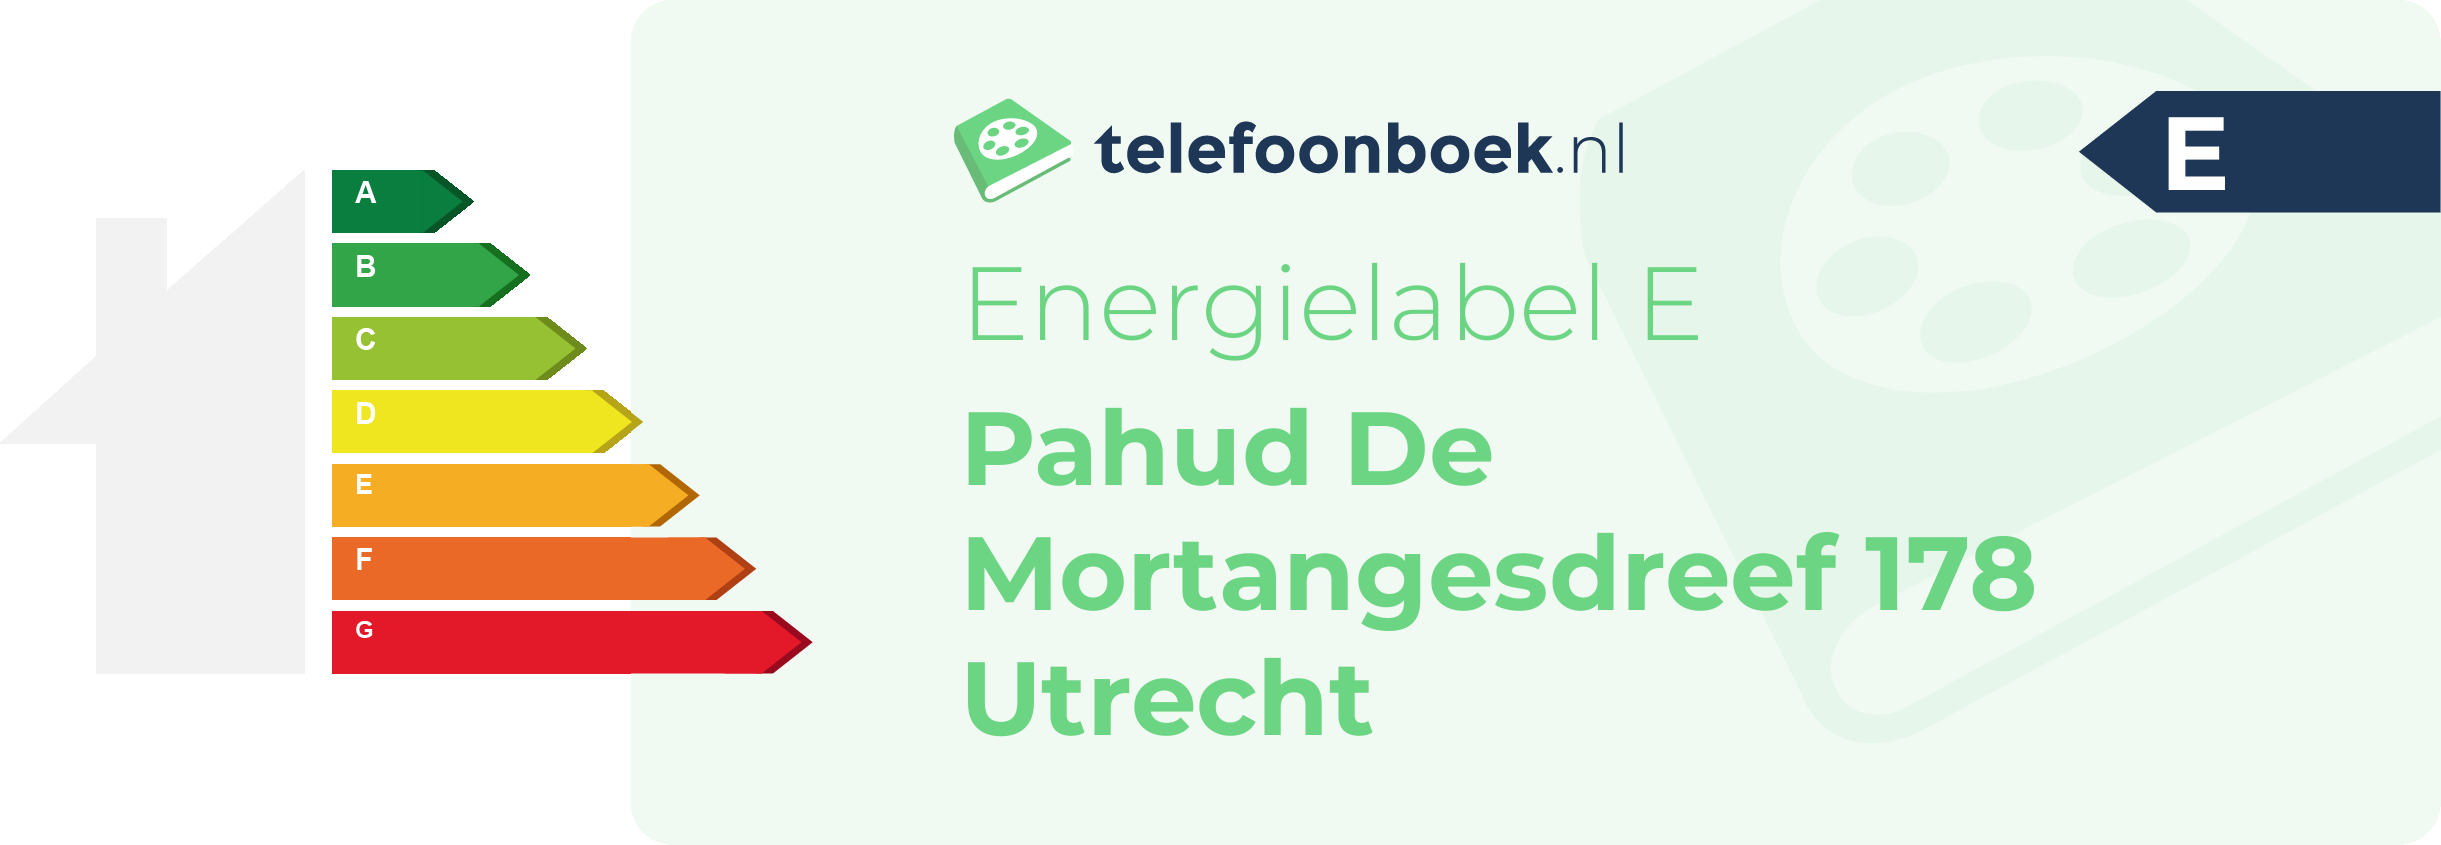 Energielabel Pahud De Mortangesdreef 178 Utrecht